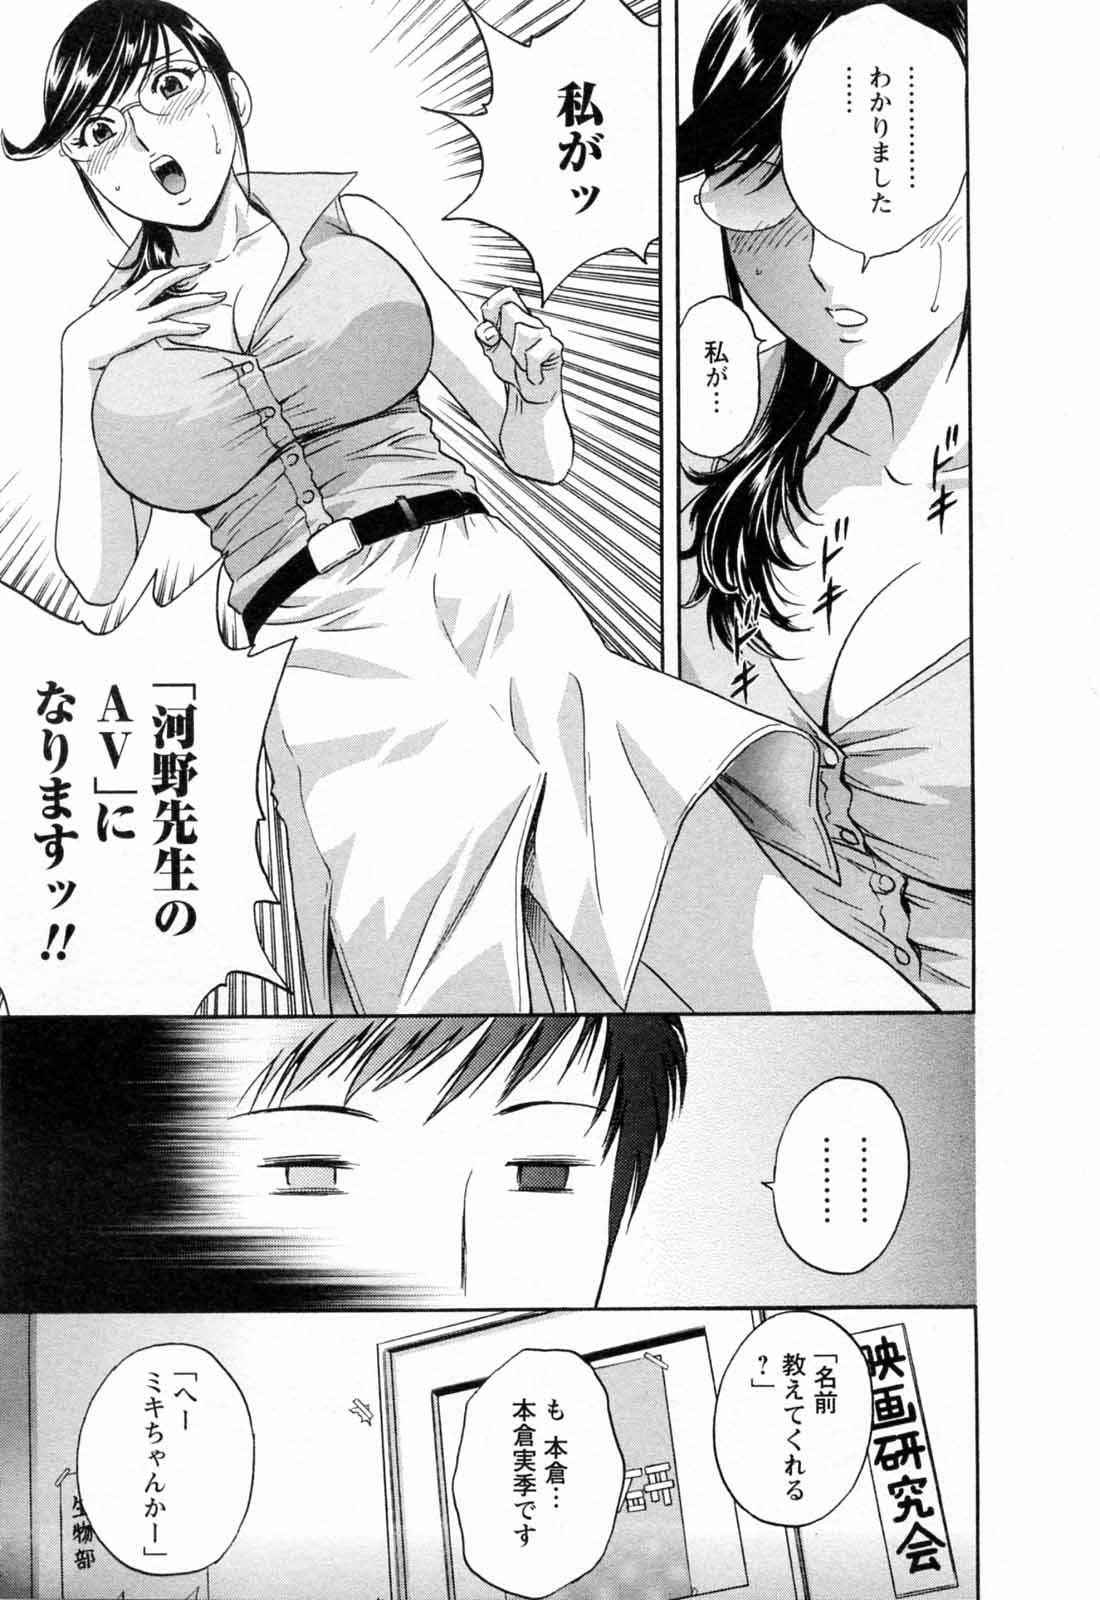 [Hidemaru] Mo-Retsu! Boin Sensei (Boing Boing Teacher) Vol.5 100